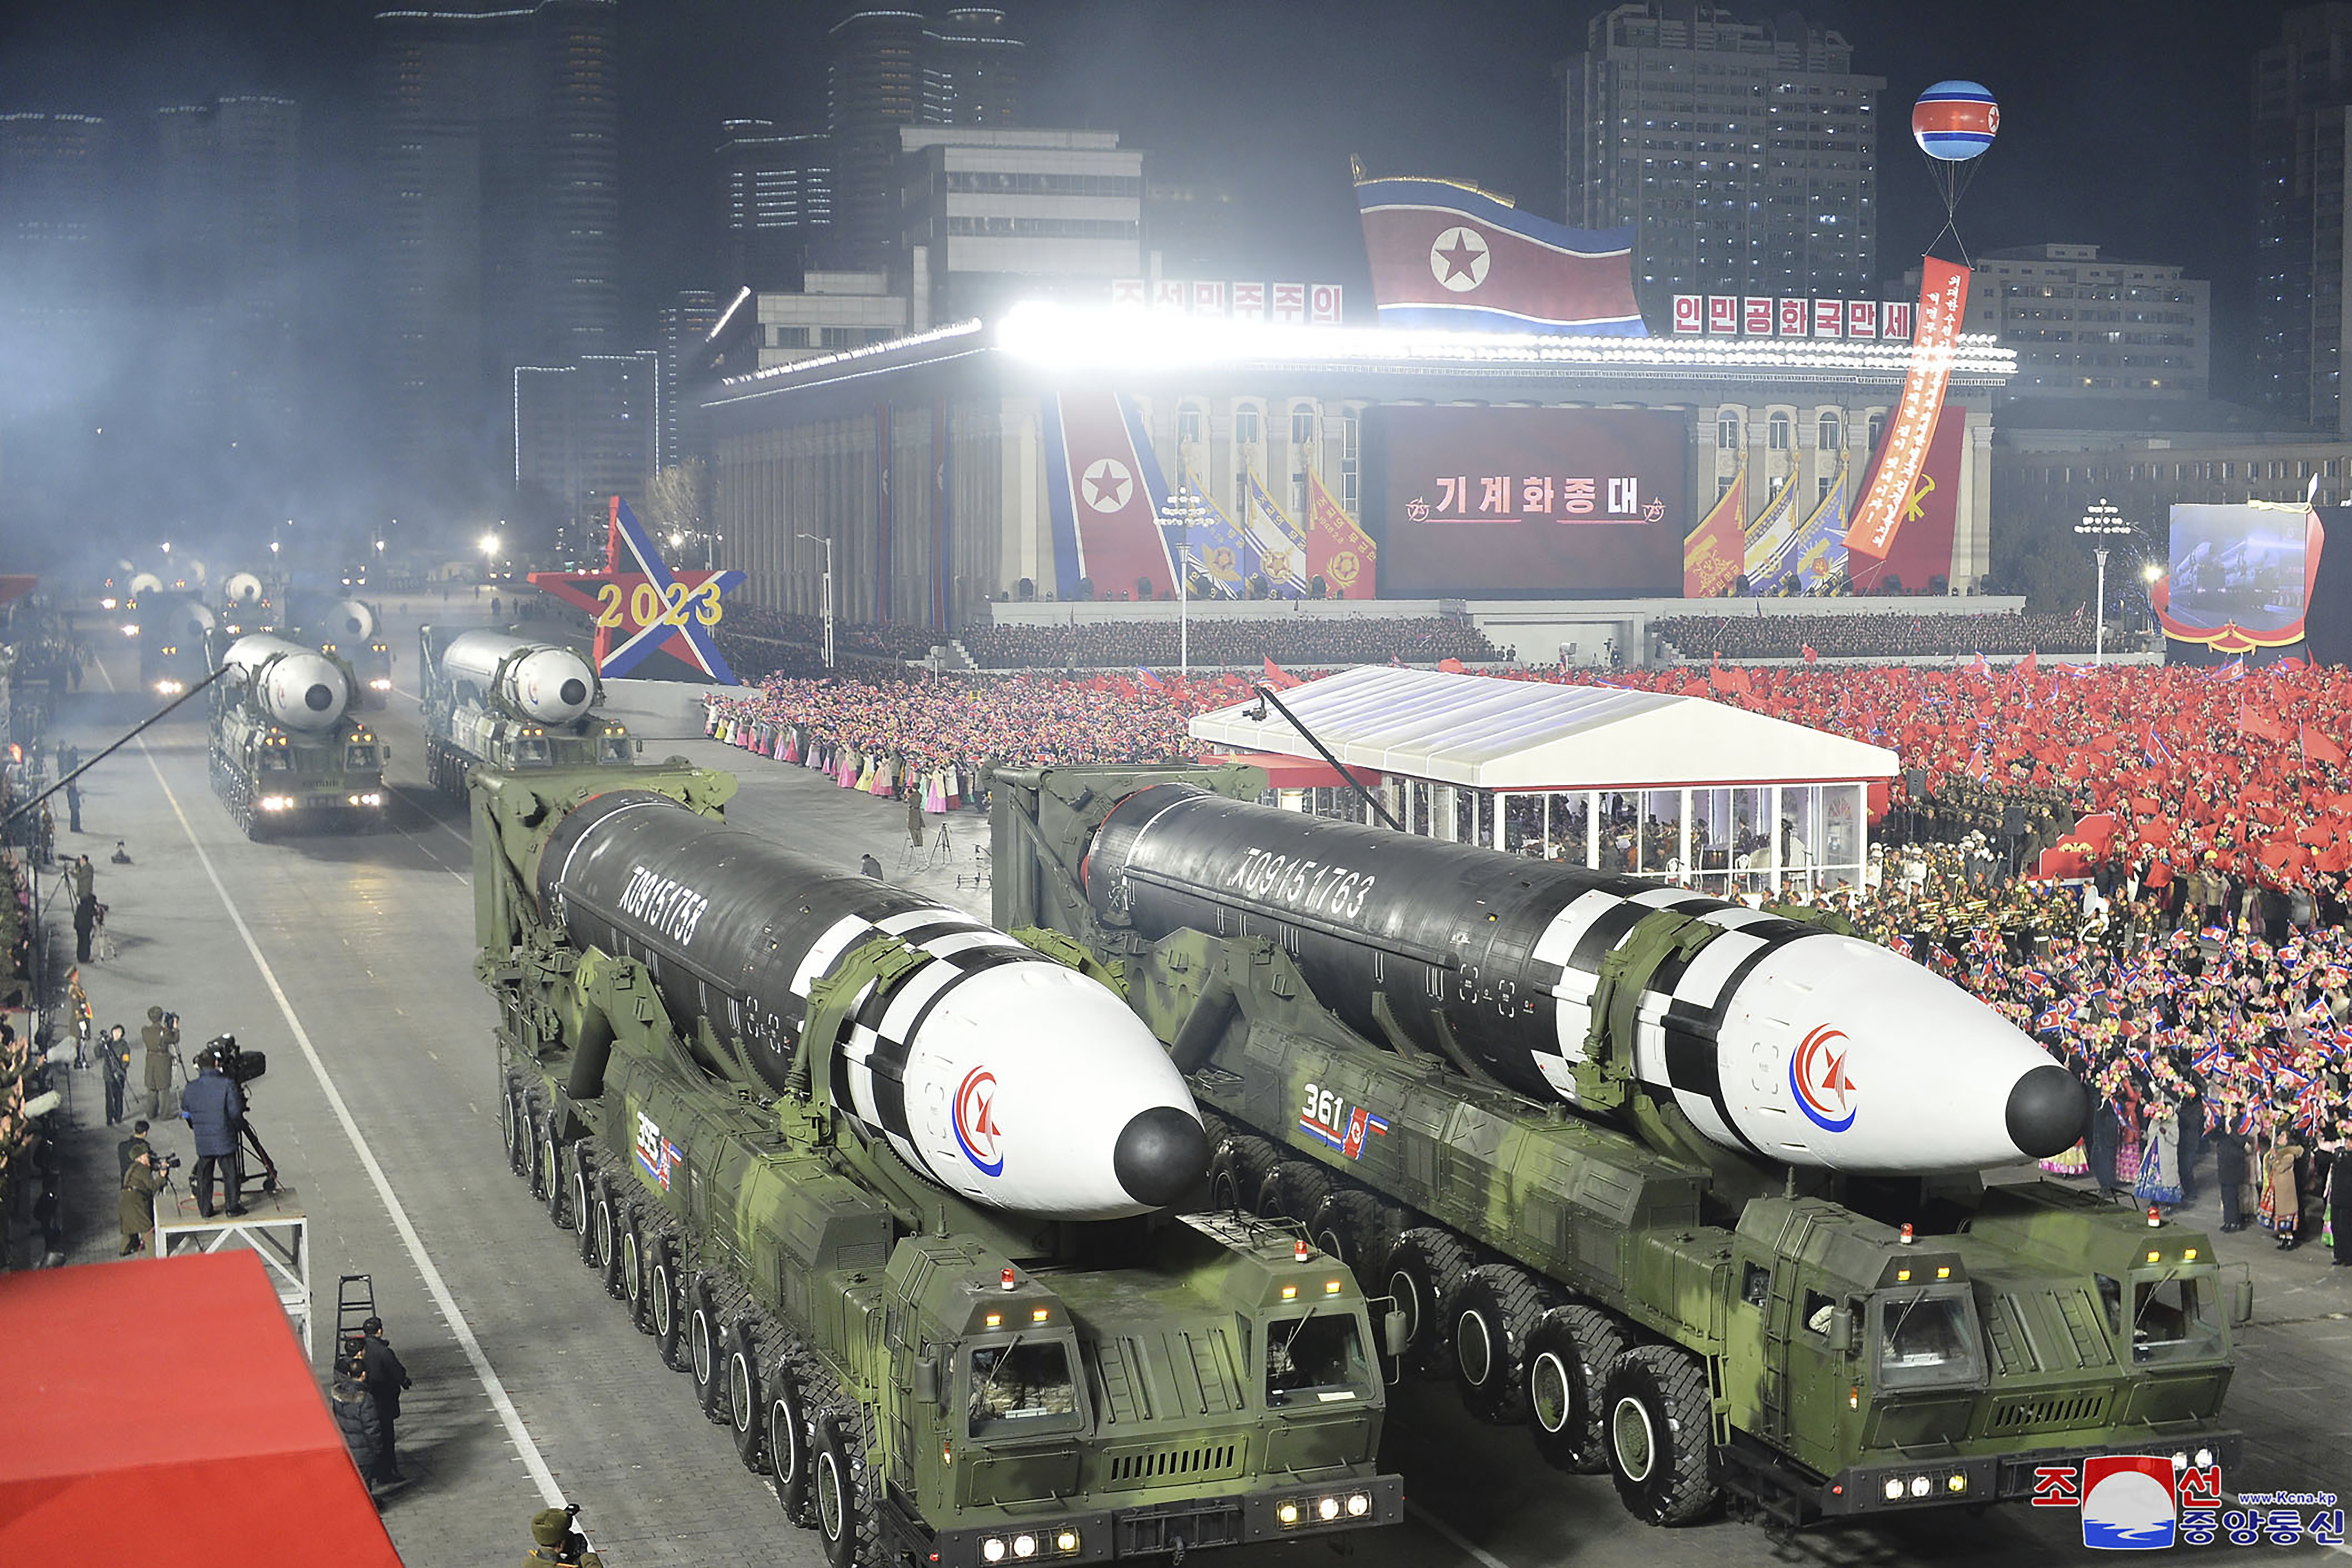 En un desfile militar en Pyongyang en febrero, Corea del Norte exhibió un número récord de misiles balísticos intercontinentales y nucleares. (Foto: Agencia Central de Noticias de Corea via AP)